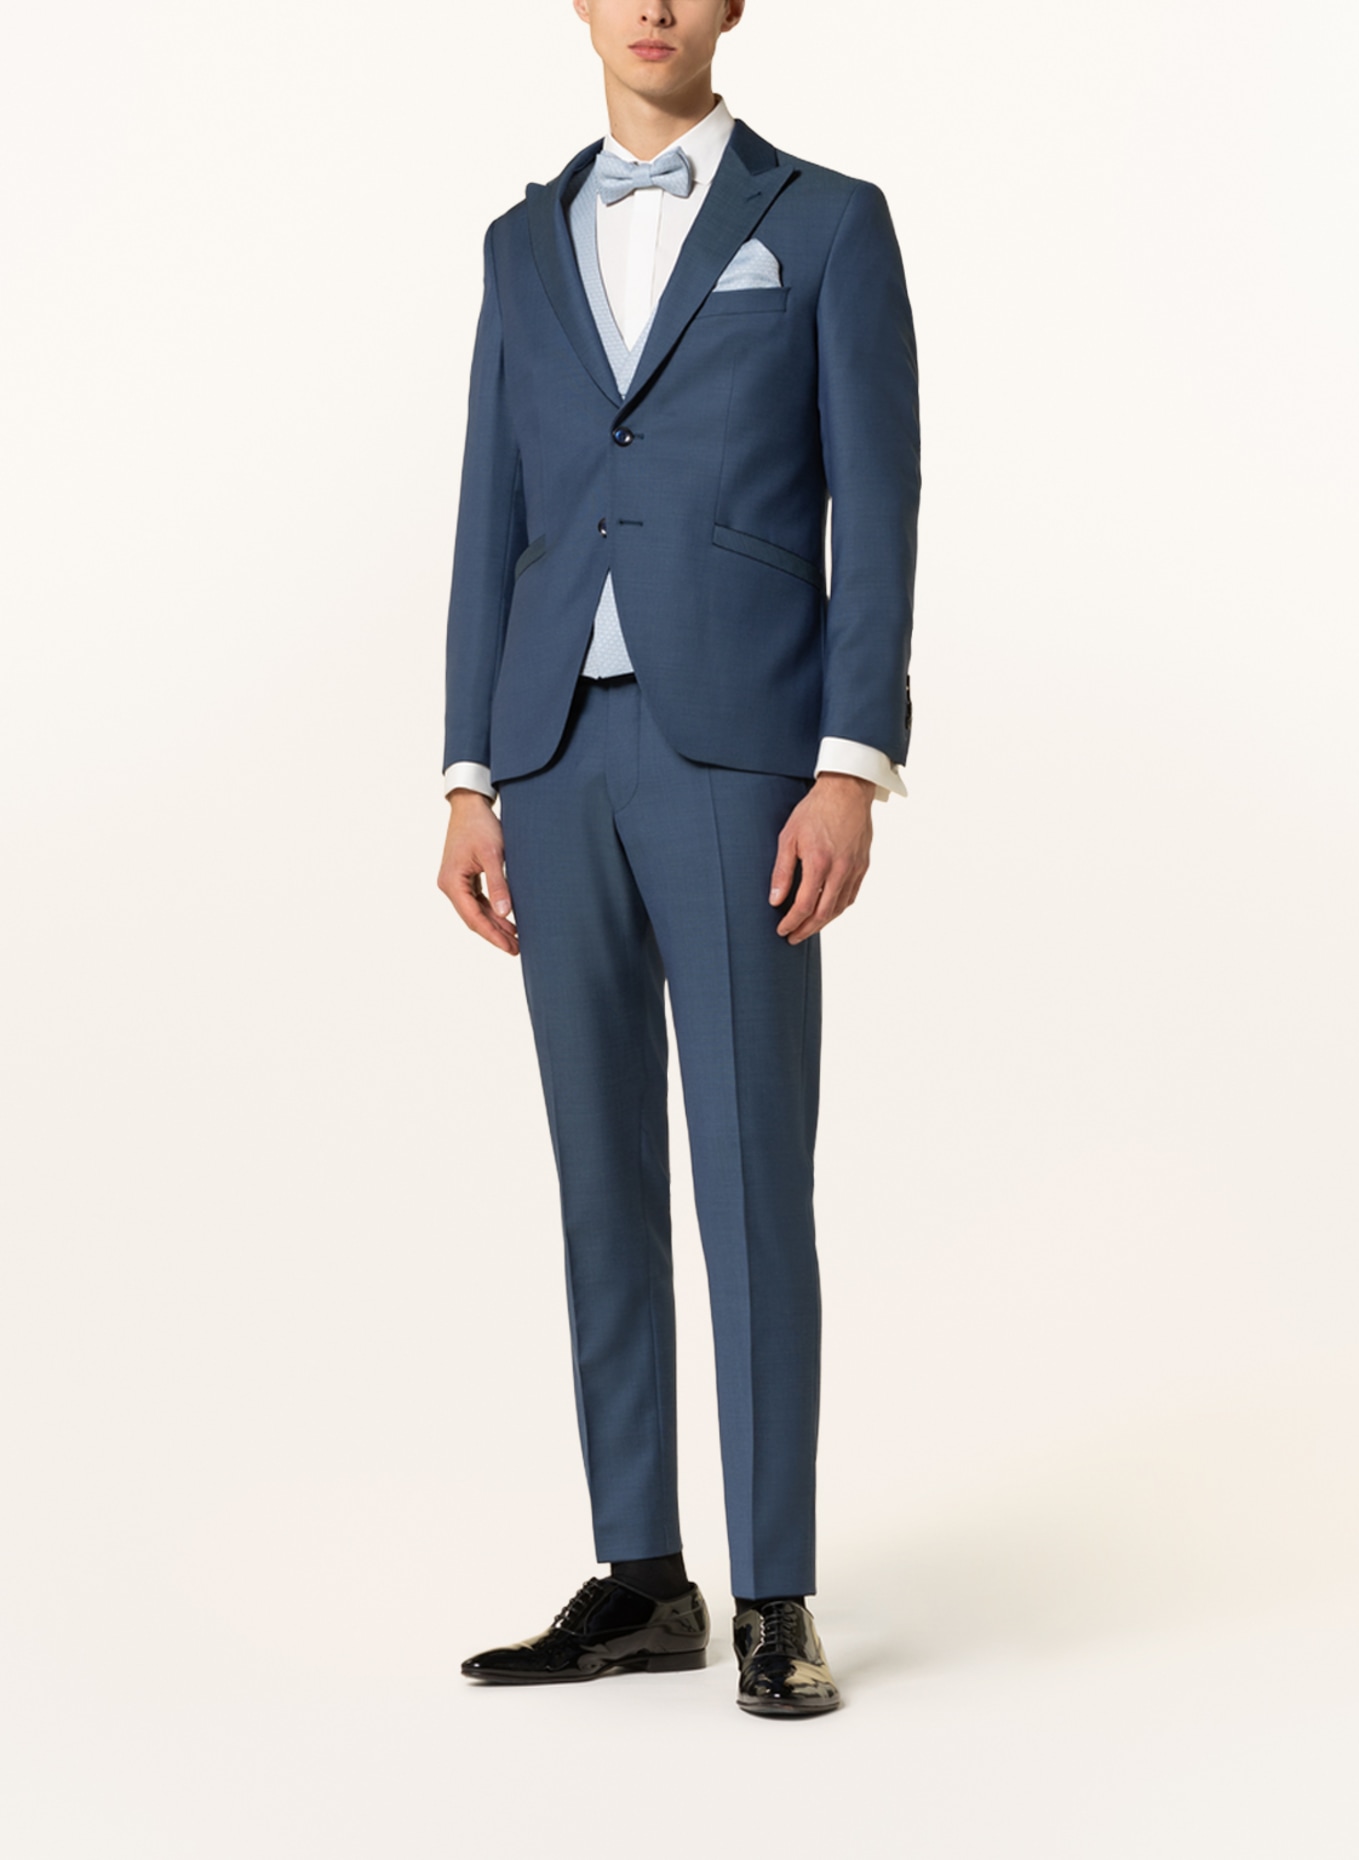 WILVORST Suit vest extra slim fit, Color: 030 hell Blau gem. (Image 2)